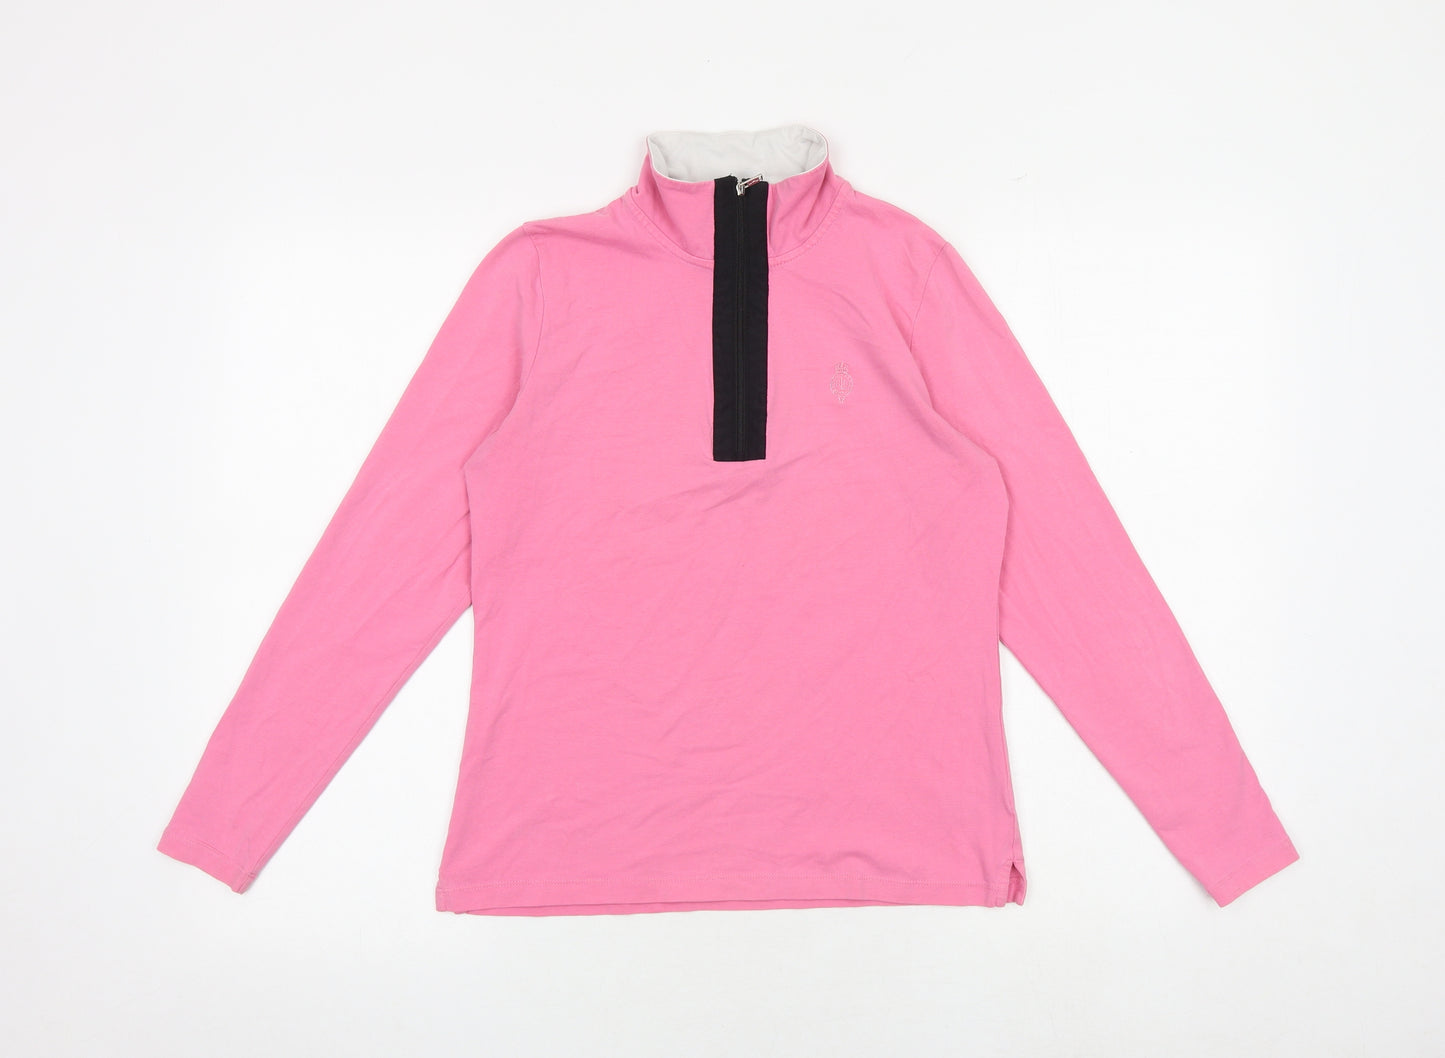 Ralph Lauren Womens Pink Cotton Pullover Sweatshirt Size M Zip - Quarter-Zip